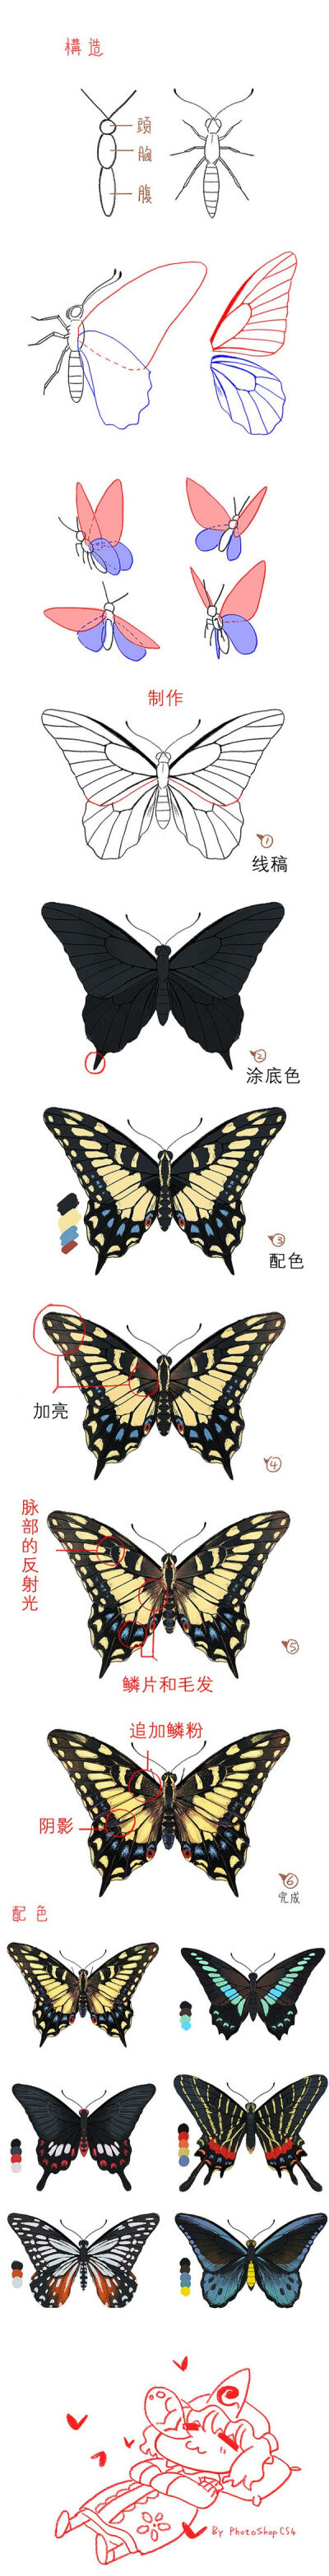 蝴蝶的翅膀结构图片